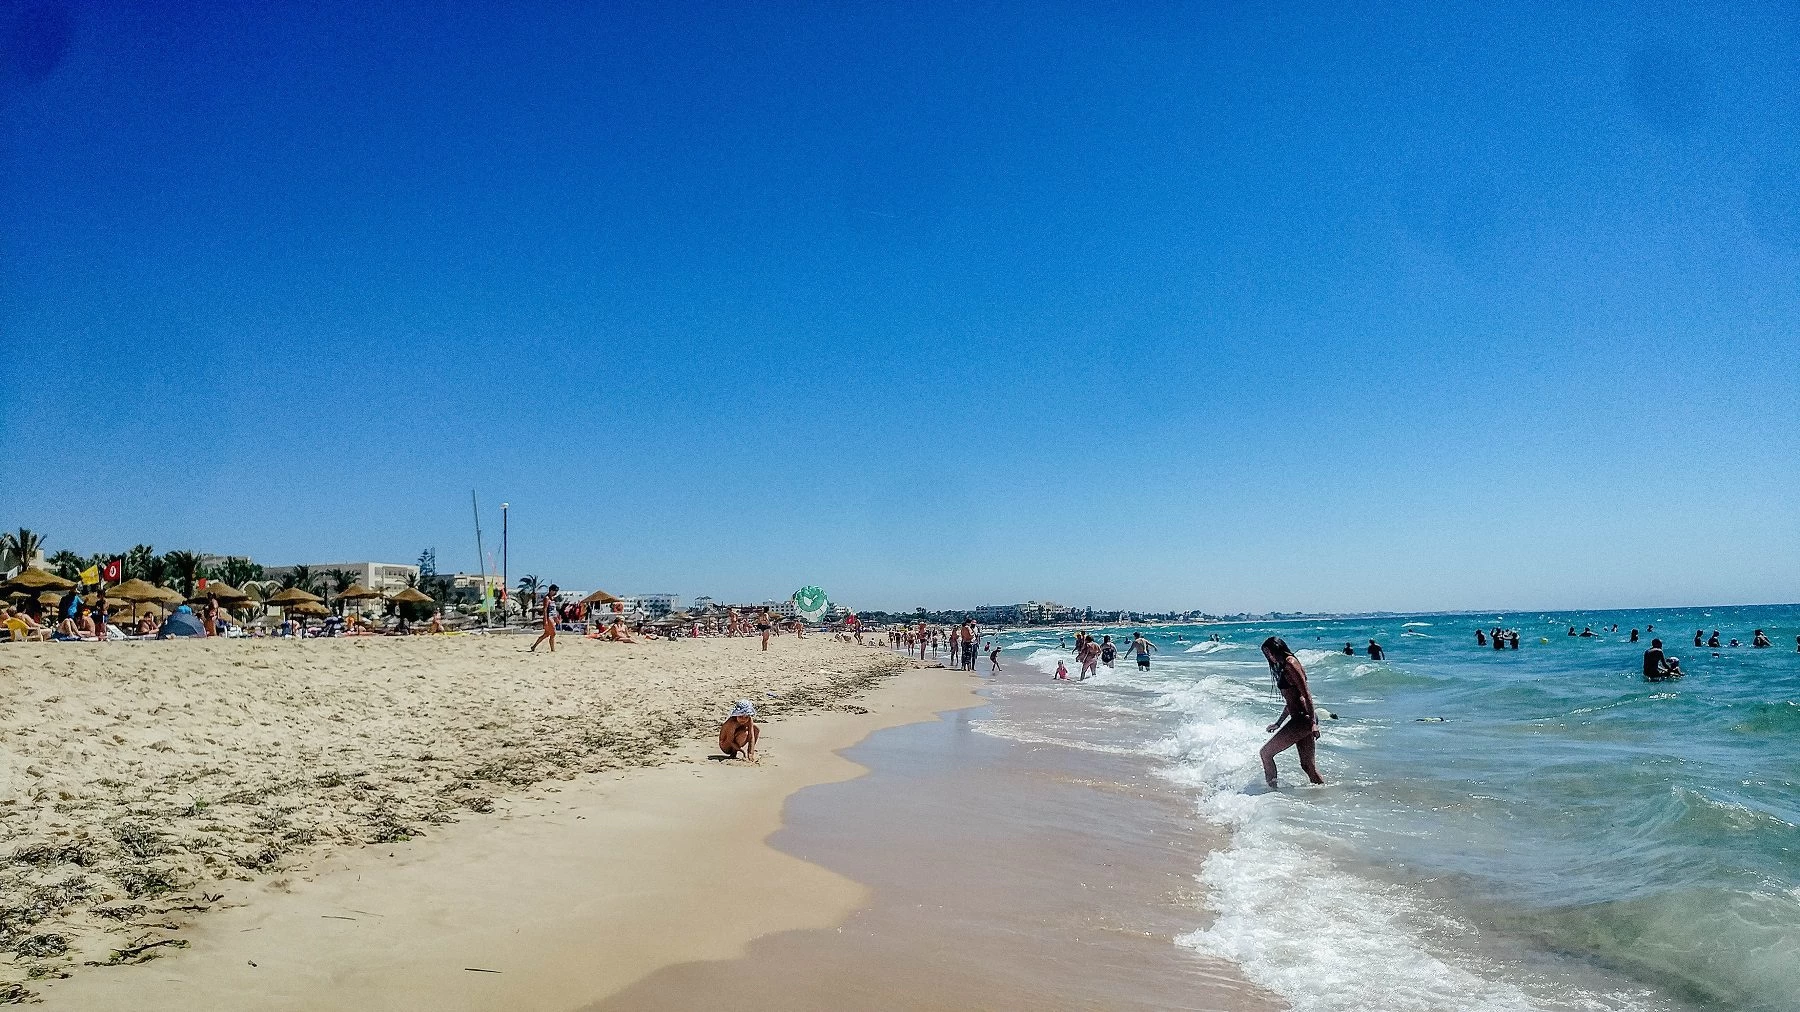 The beach is beautiful in Tunisia